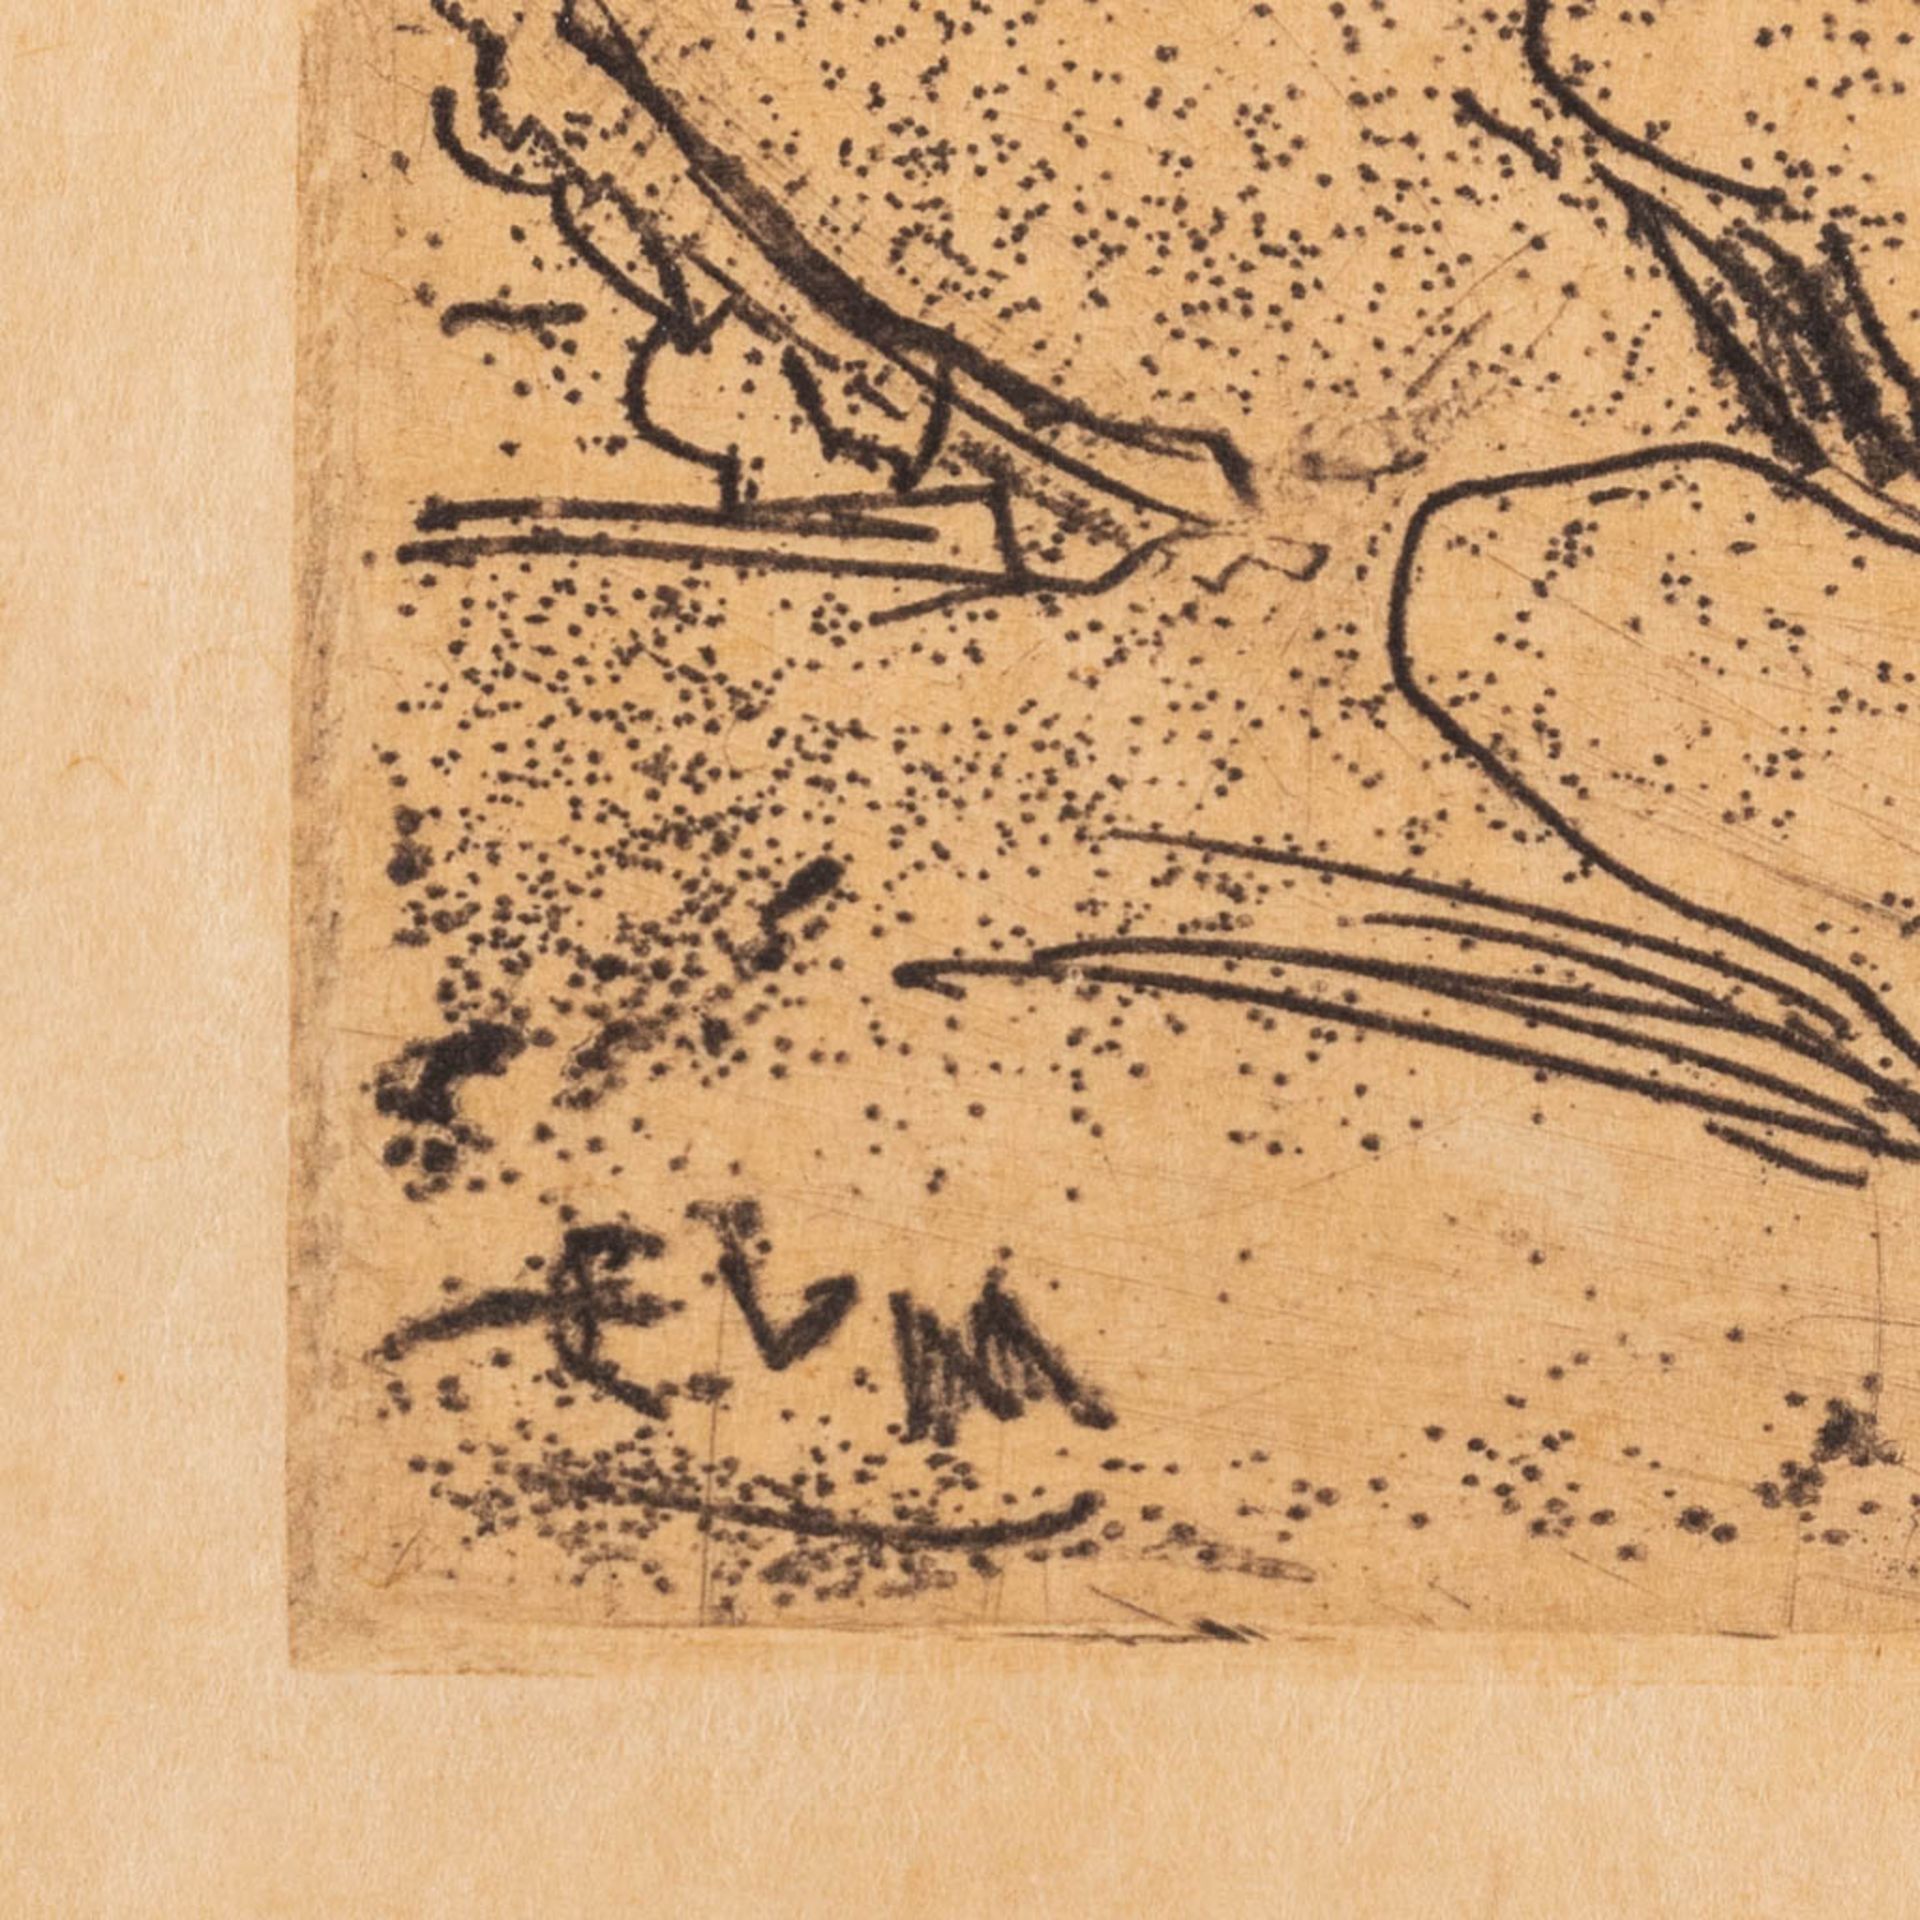 Eugeen VAN MIEGHEM (1875-1930) 'Trois épieurs' an etching, 1922. (W: 9,8 x H: 7,1 cm) - Image 4 of 6